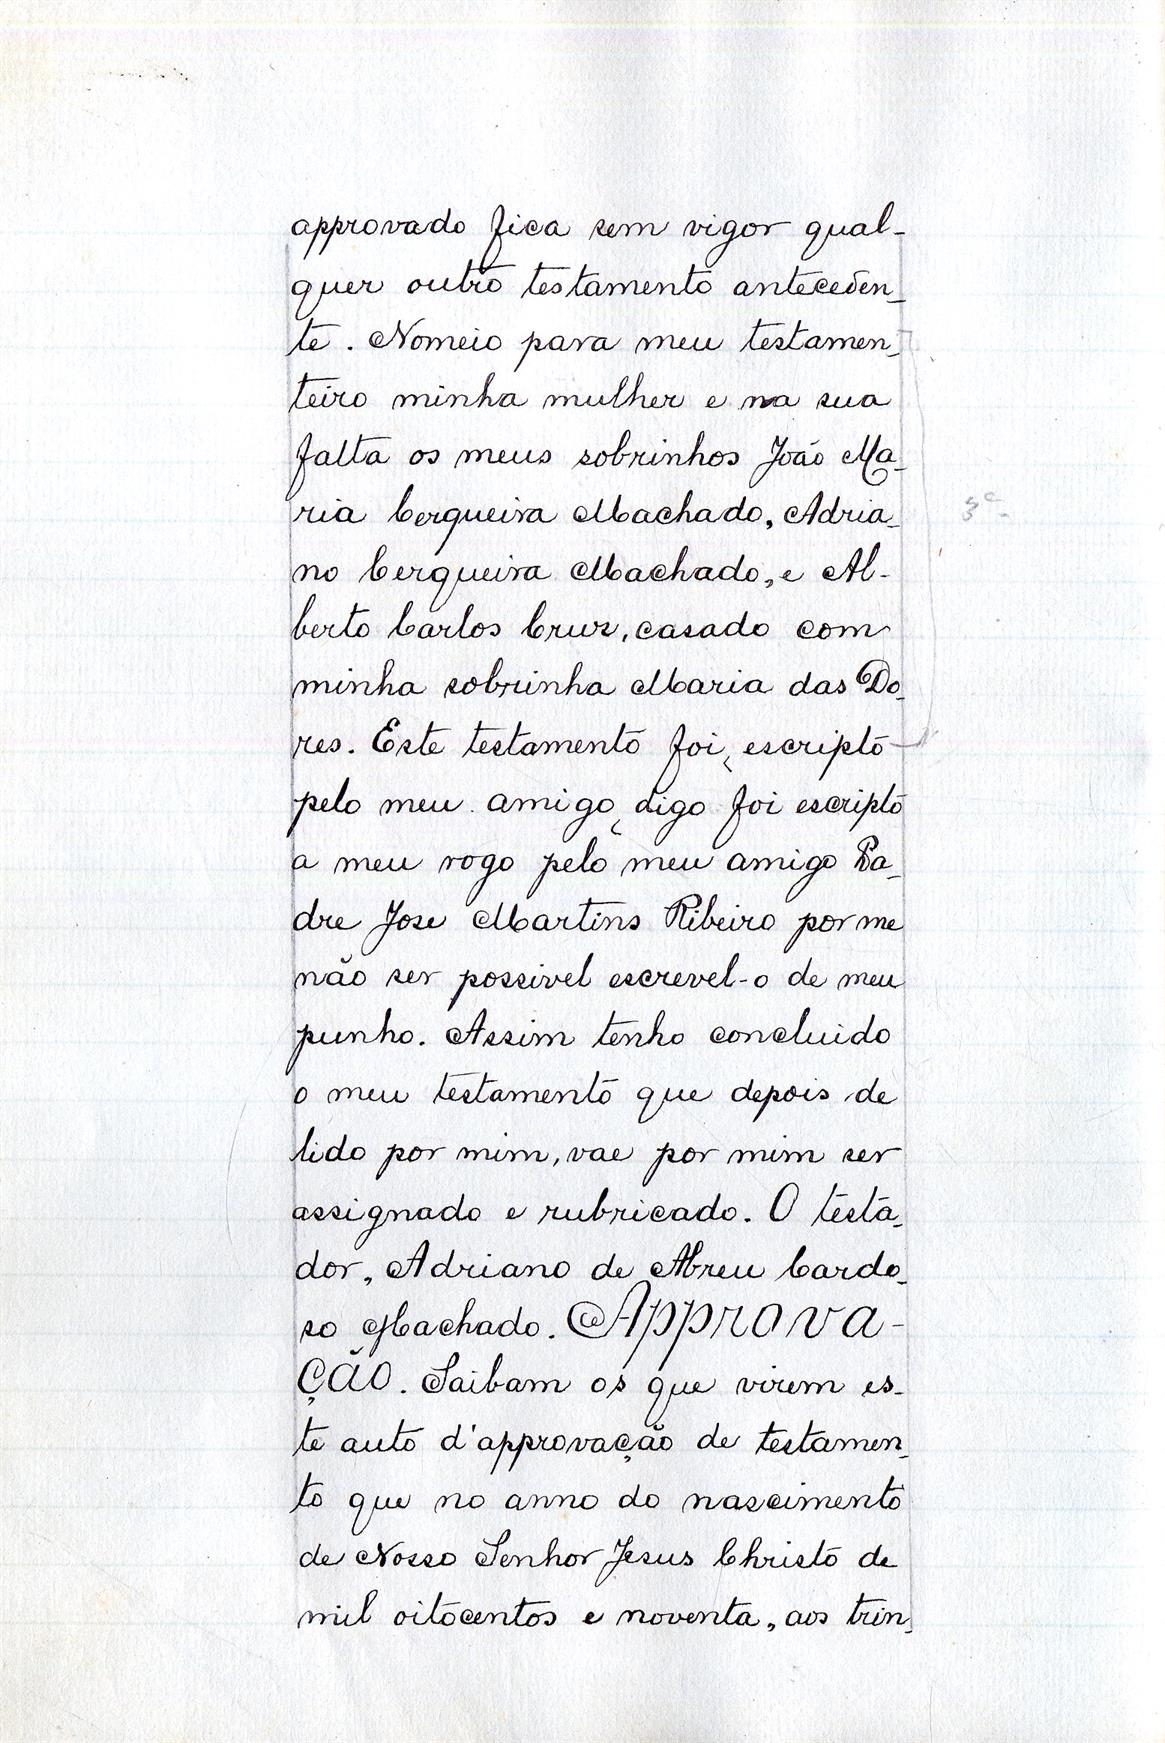 Registo do testamento com que faleceu Adriano de Abreu Cardoso Machado, Conselheiro, Procurador Geral da Coroa e Fazenda